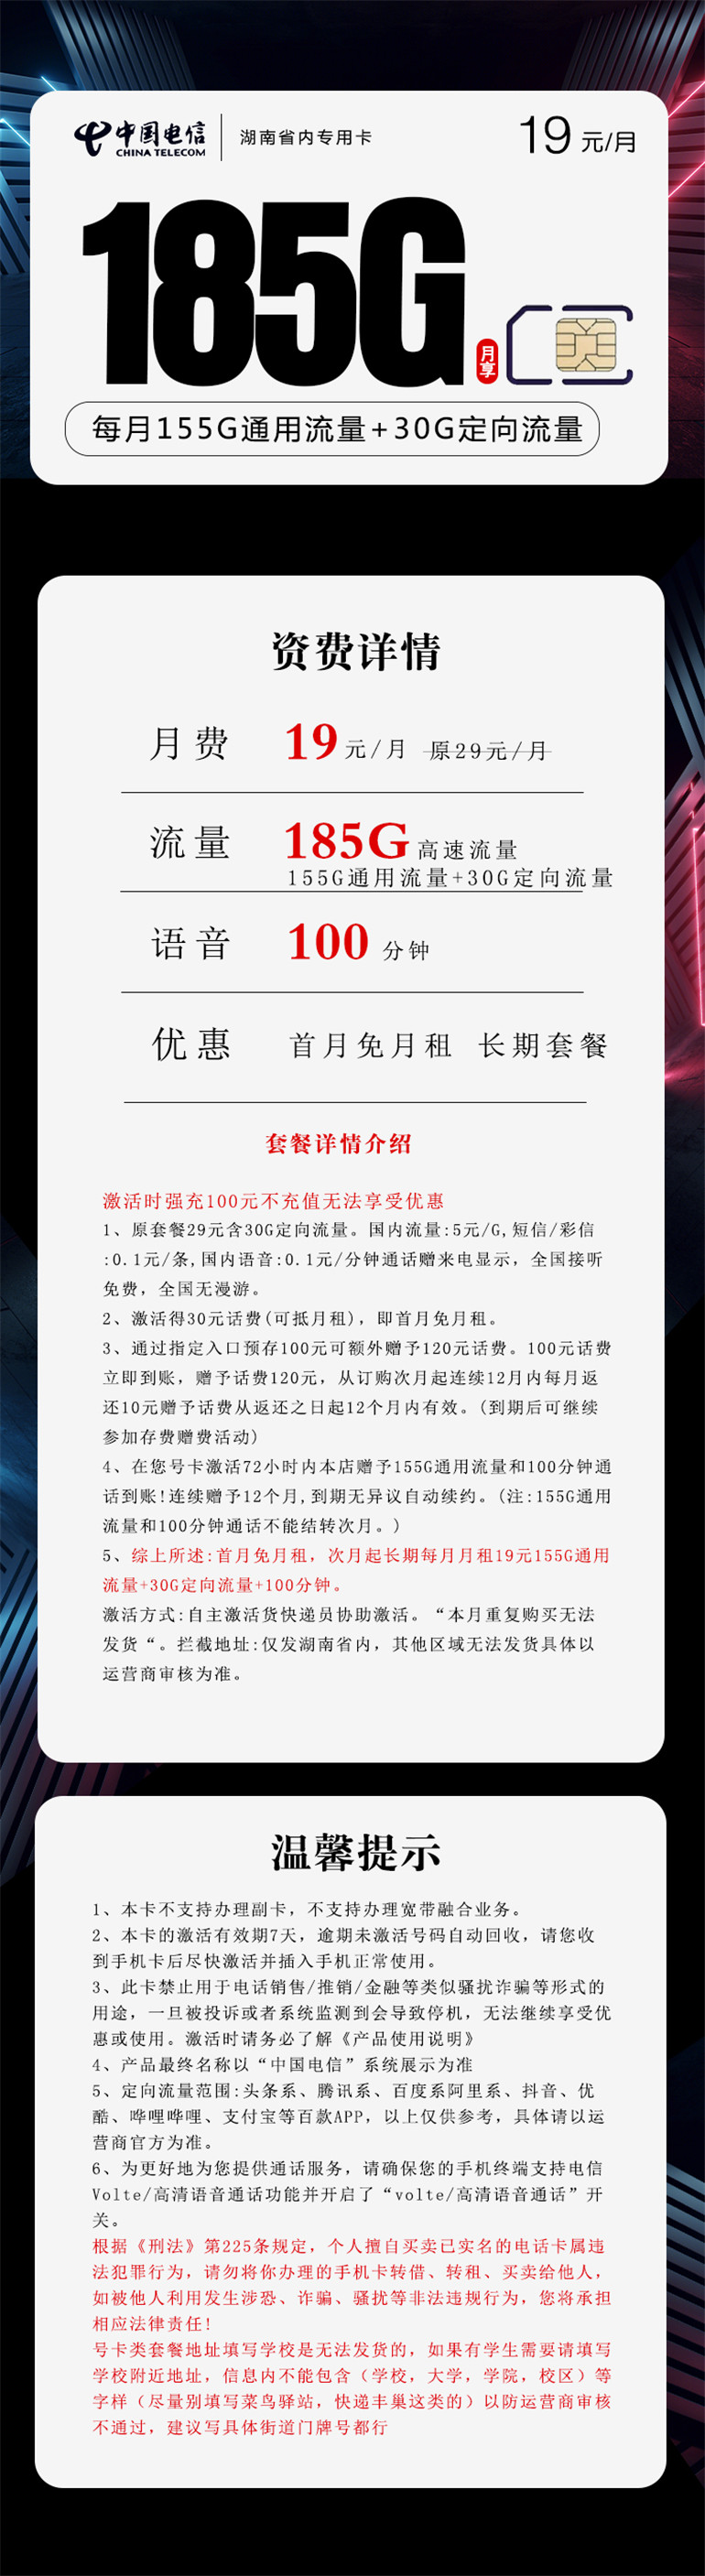 【长期19】湖南电信省内专用卡19元月租包155G通用流量+30G定向流量+100分钟